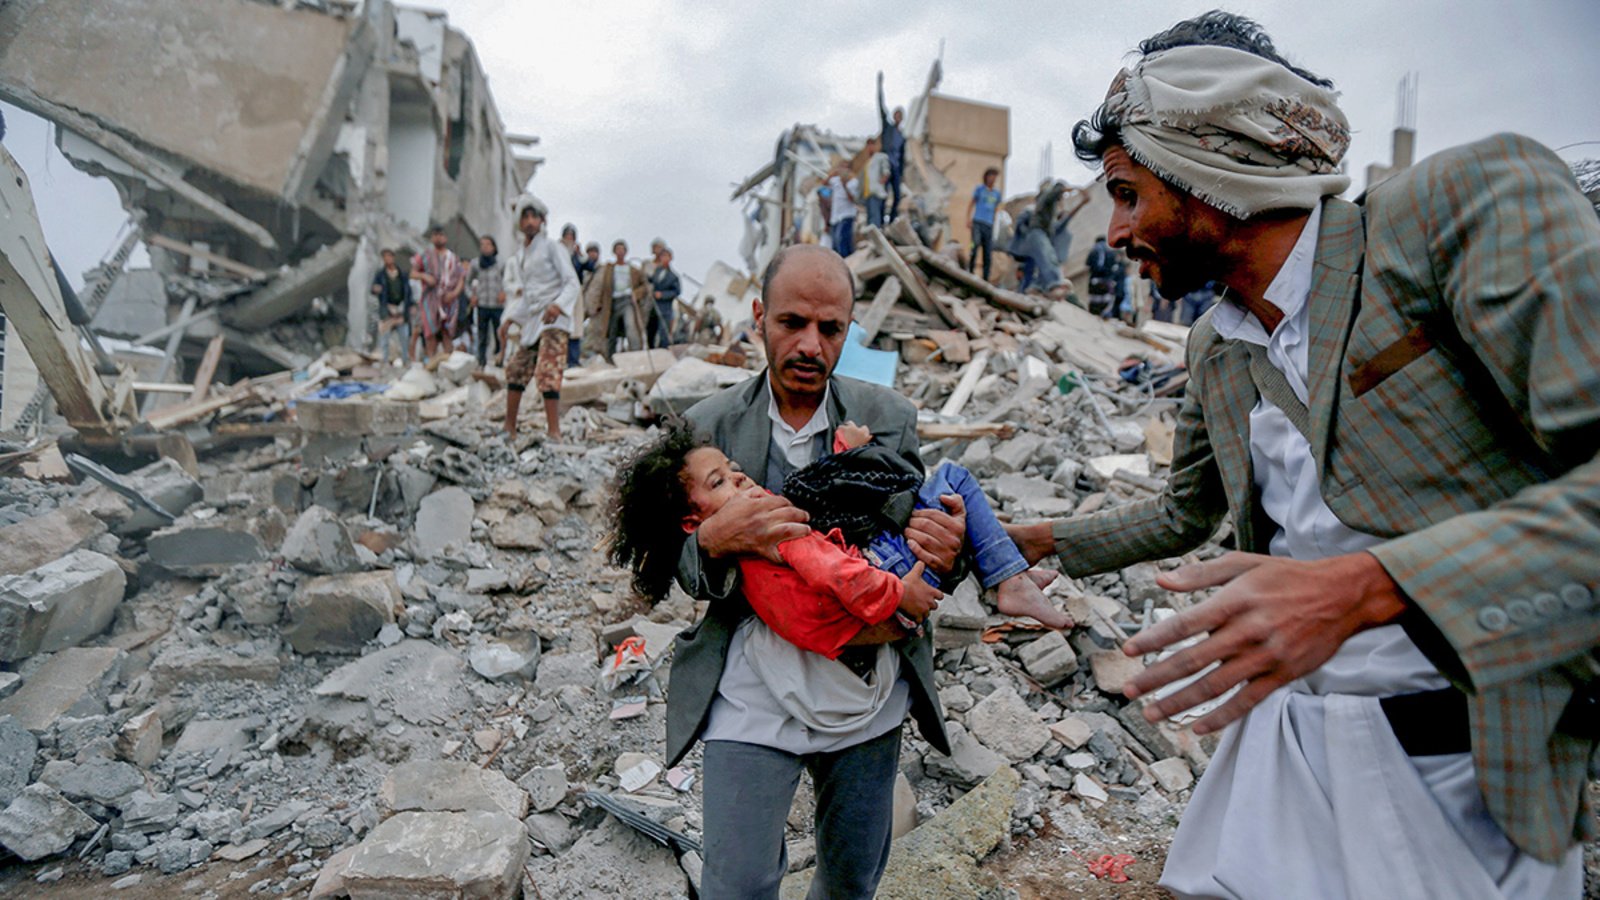 Yemen, 26 marzo 2015-2022: sette anni di guerra, così muore un popolo "dimenticato"